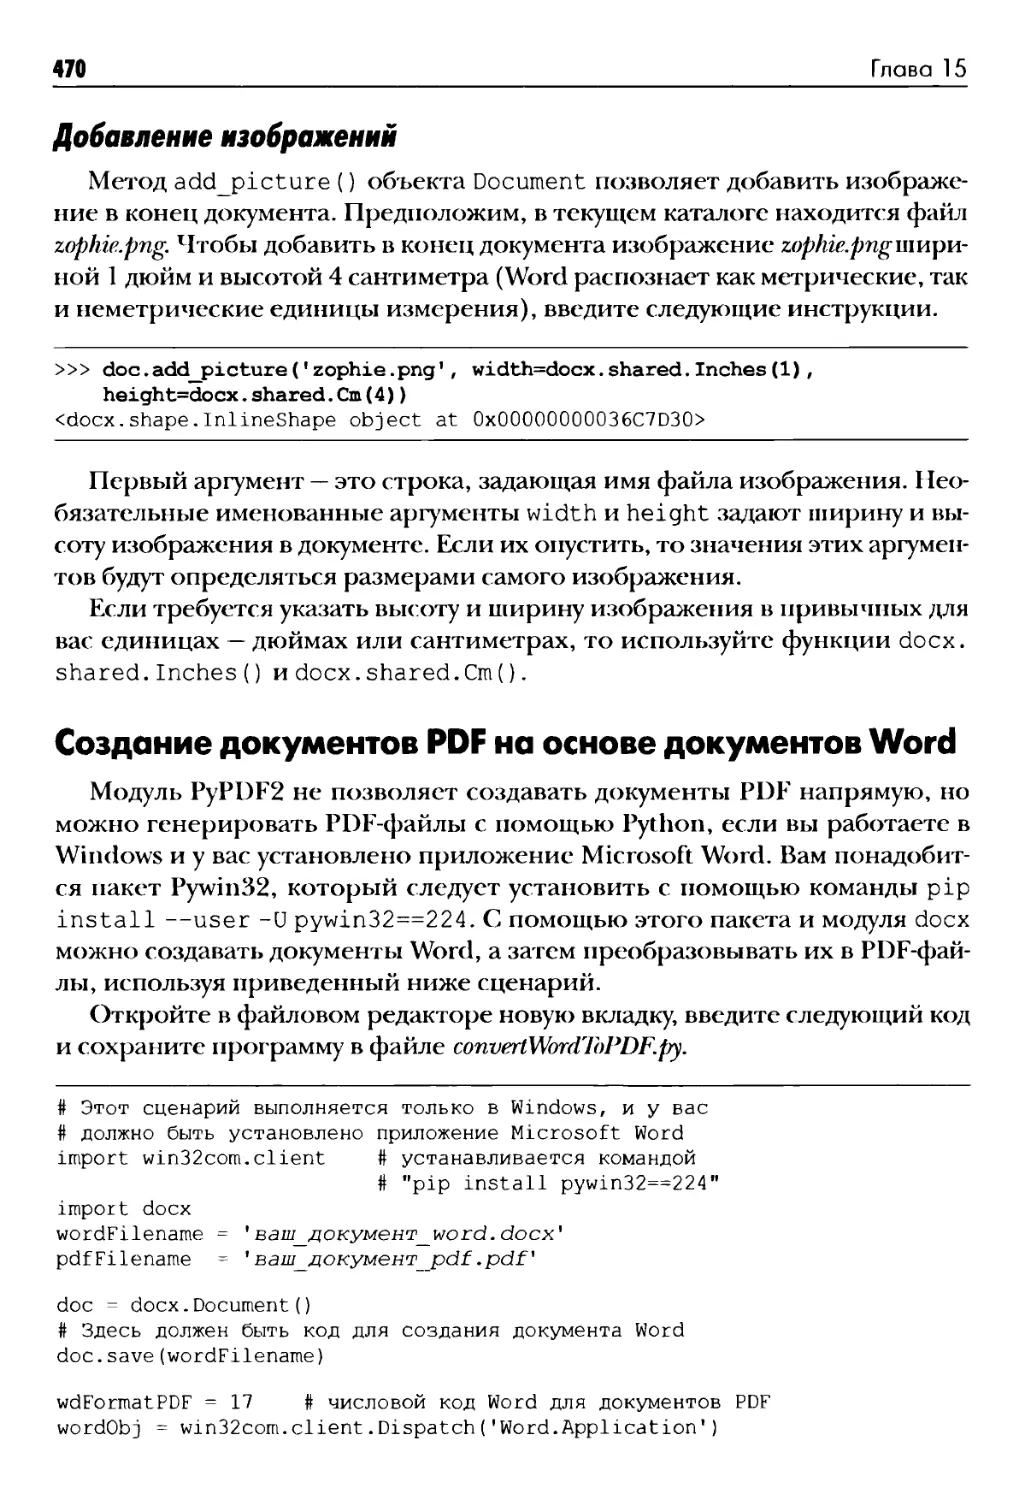 Добавление изображений
Создание документов PDF на основе документов Word